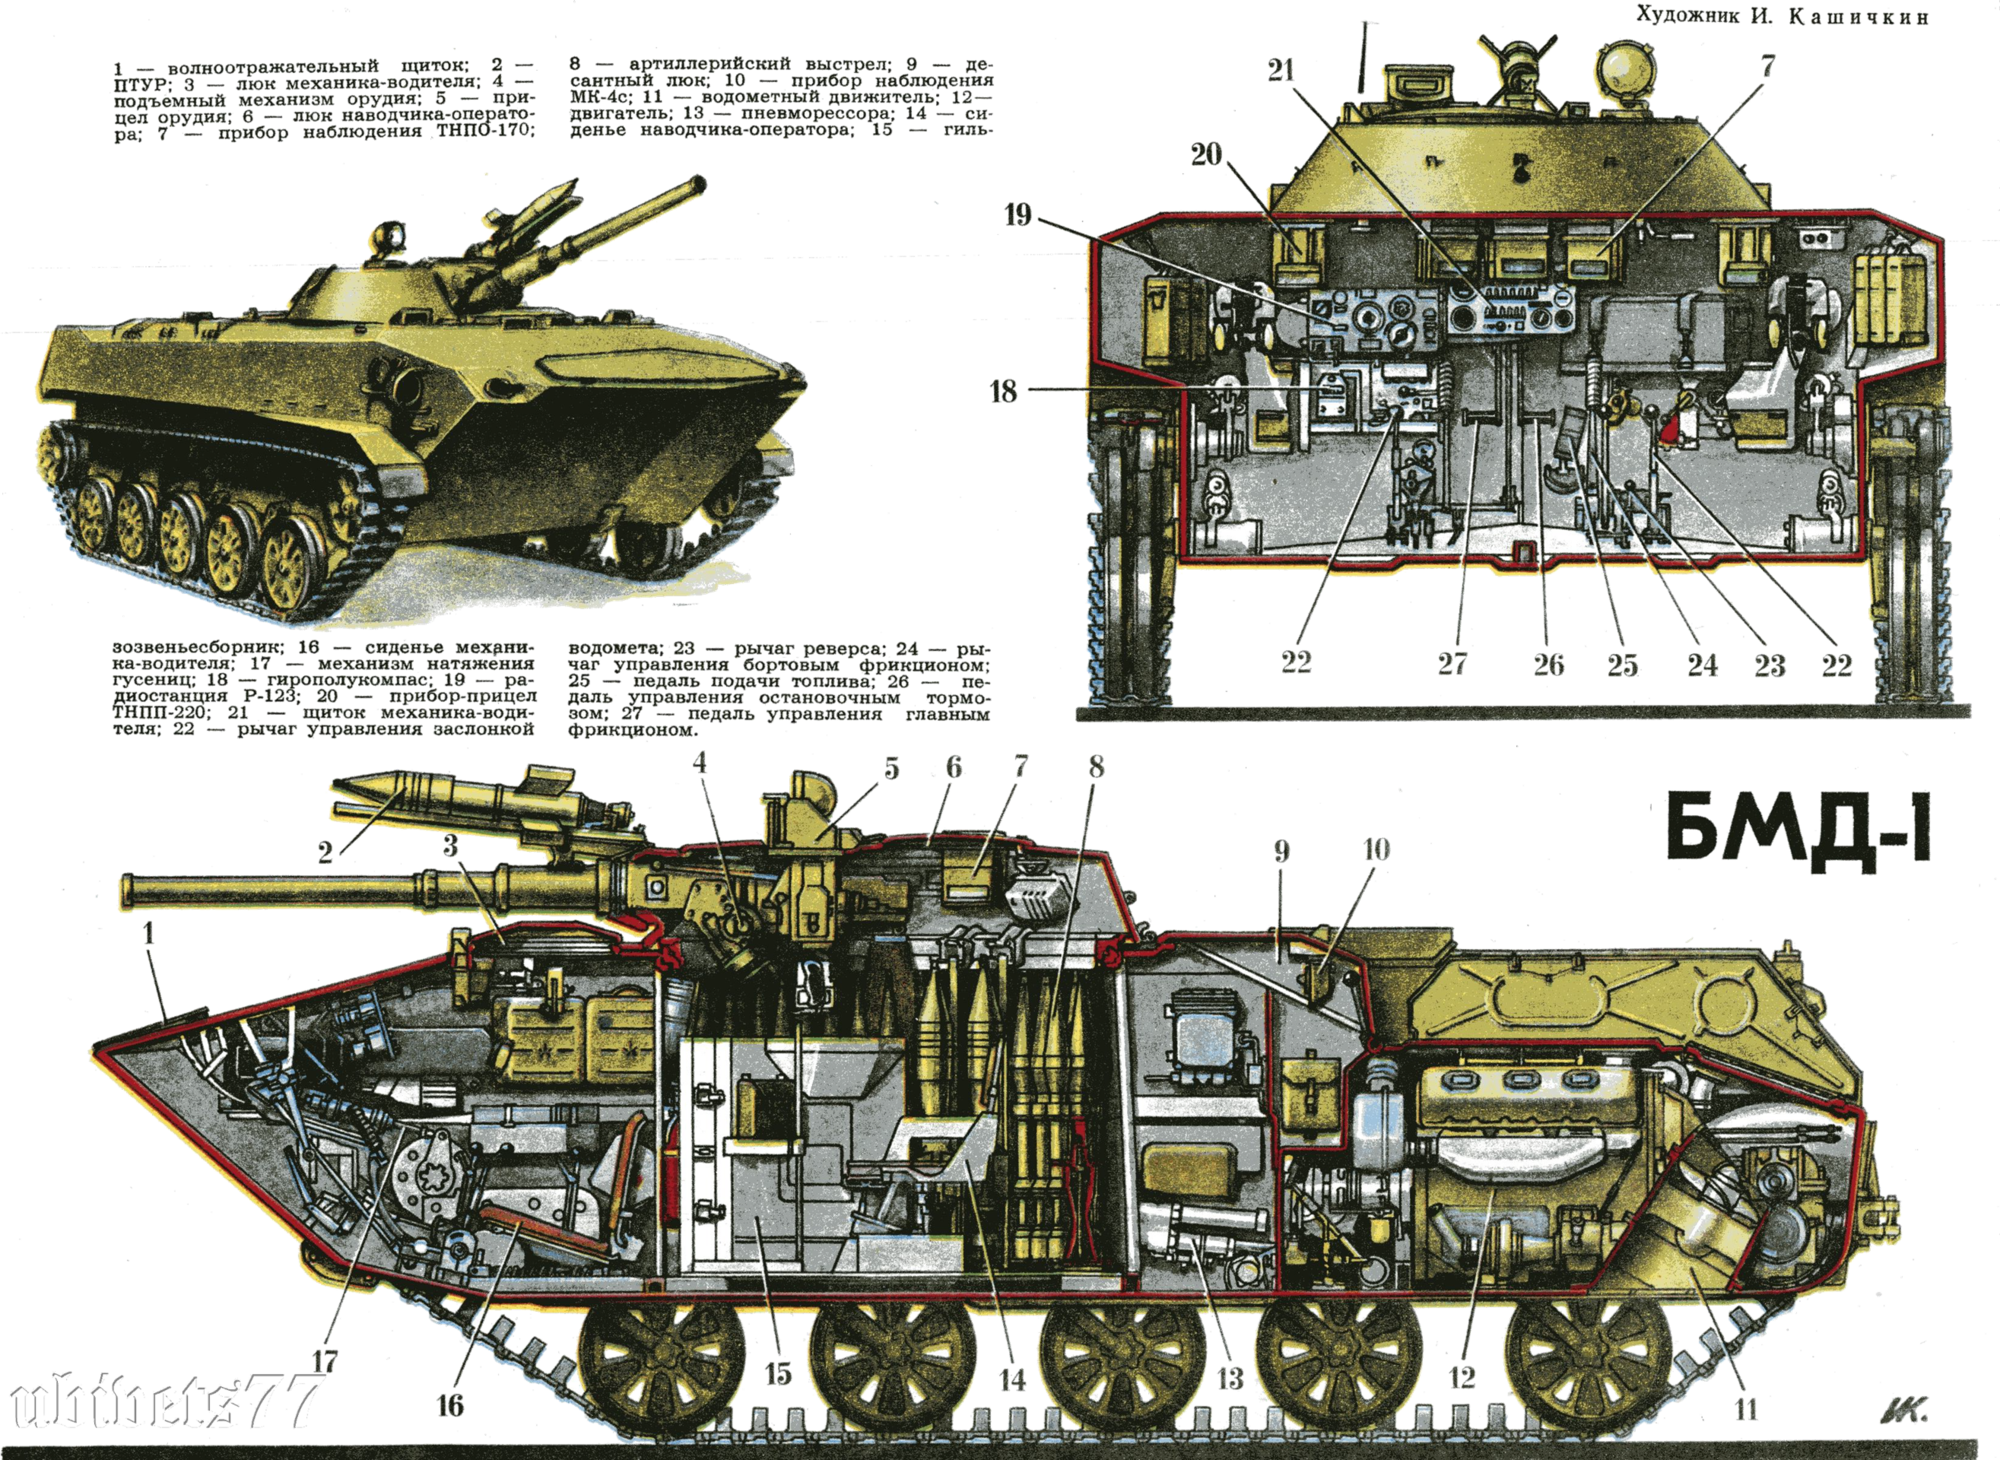 Бмд-2 (боевая машина десанта): описание, технические характеристики, вооружение. "кто владеет временем, тот побеждает". секреты десантирования бмд-2 с экипажем внутри